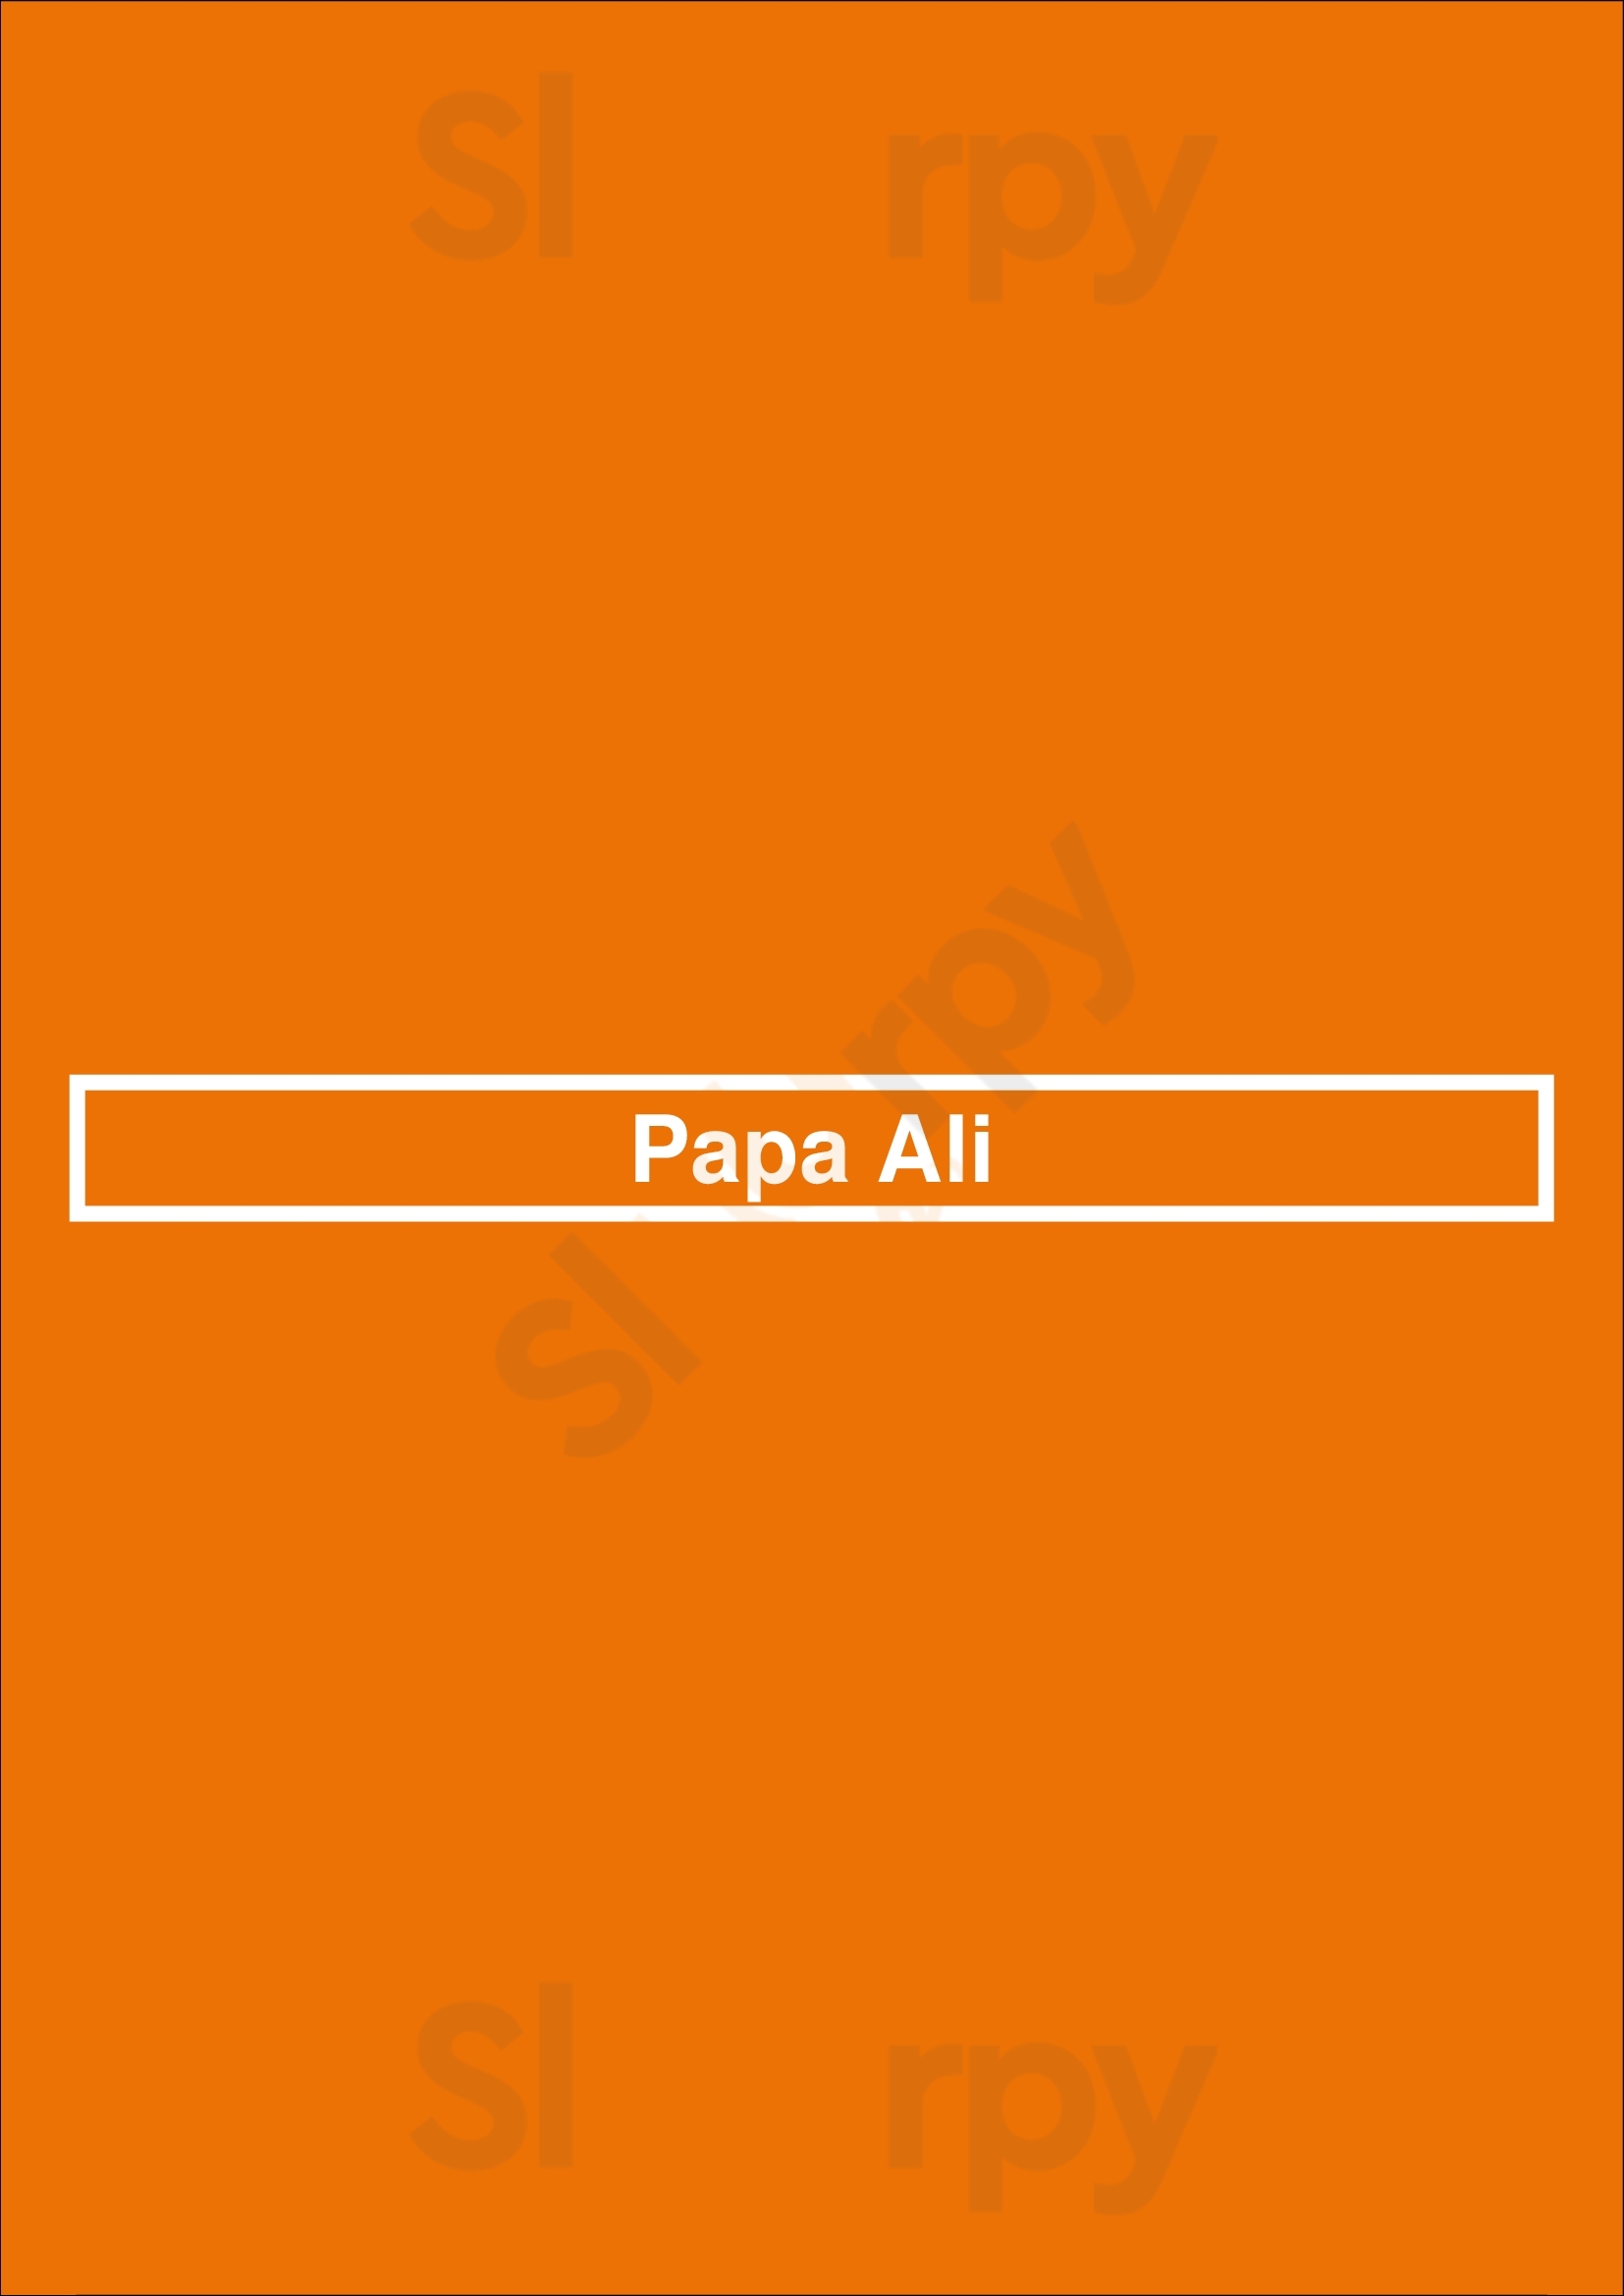 Papa Ali Glasgow Menu - 1